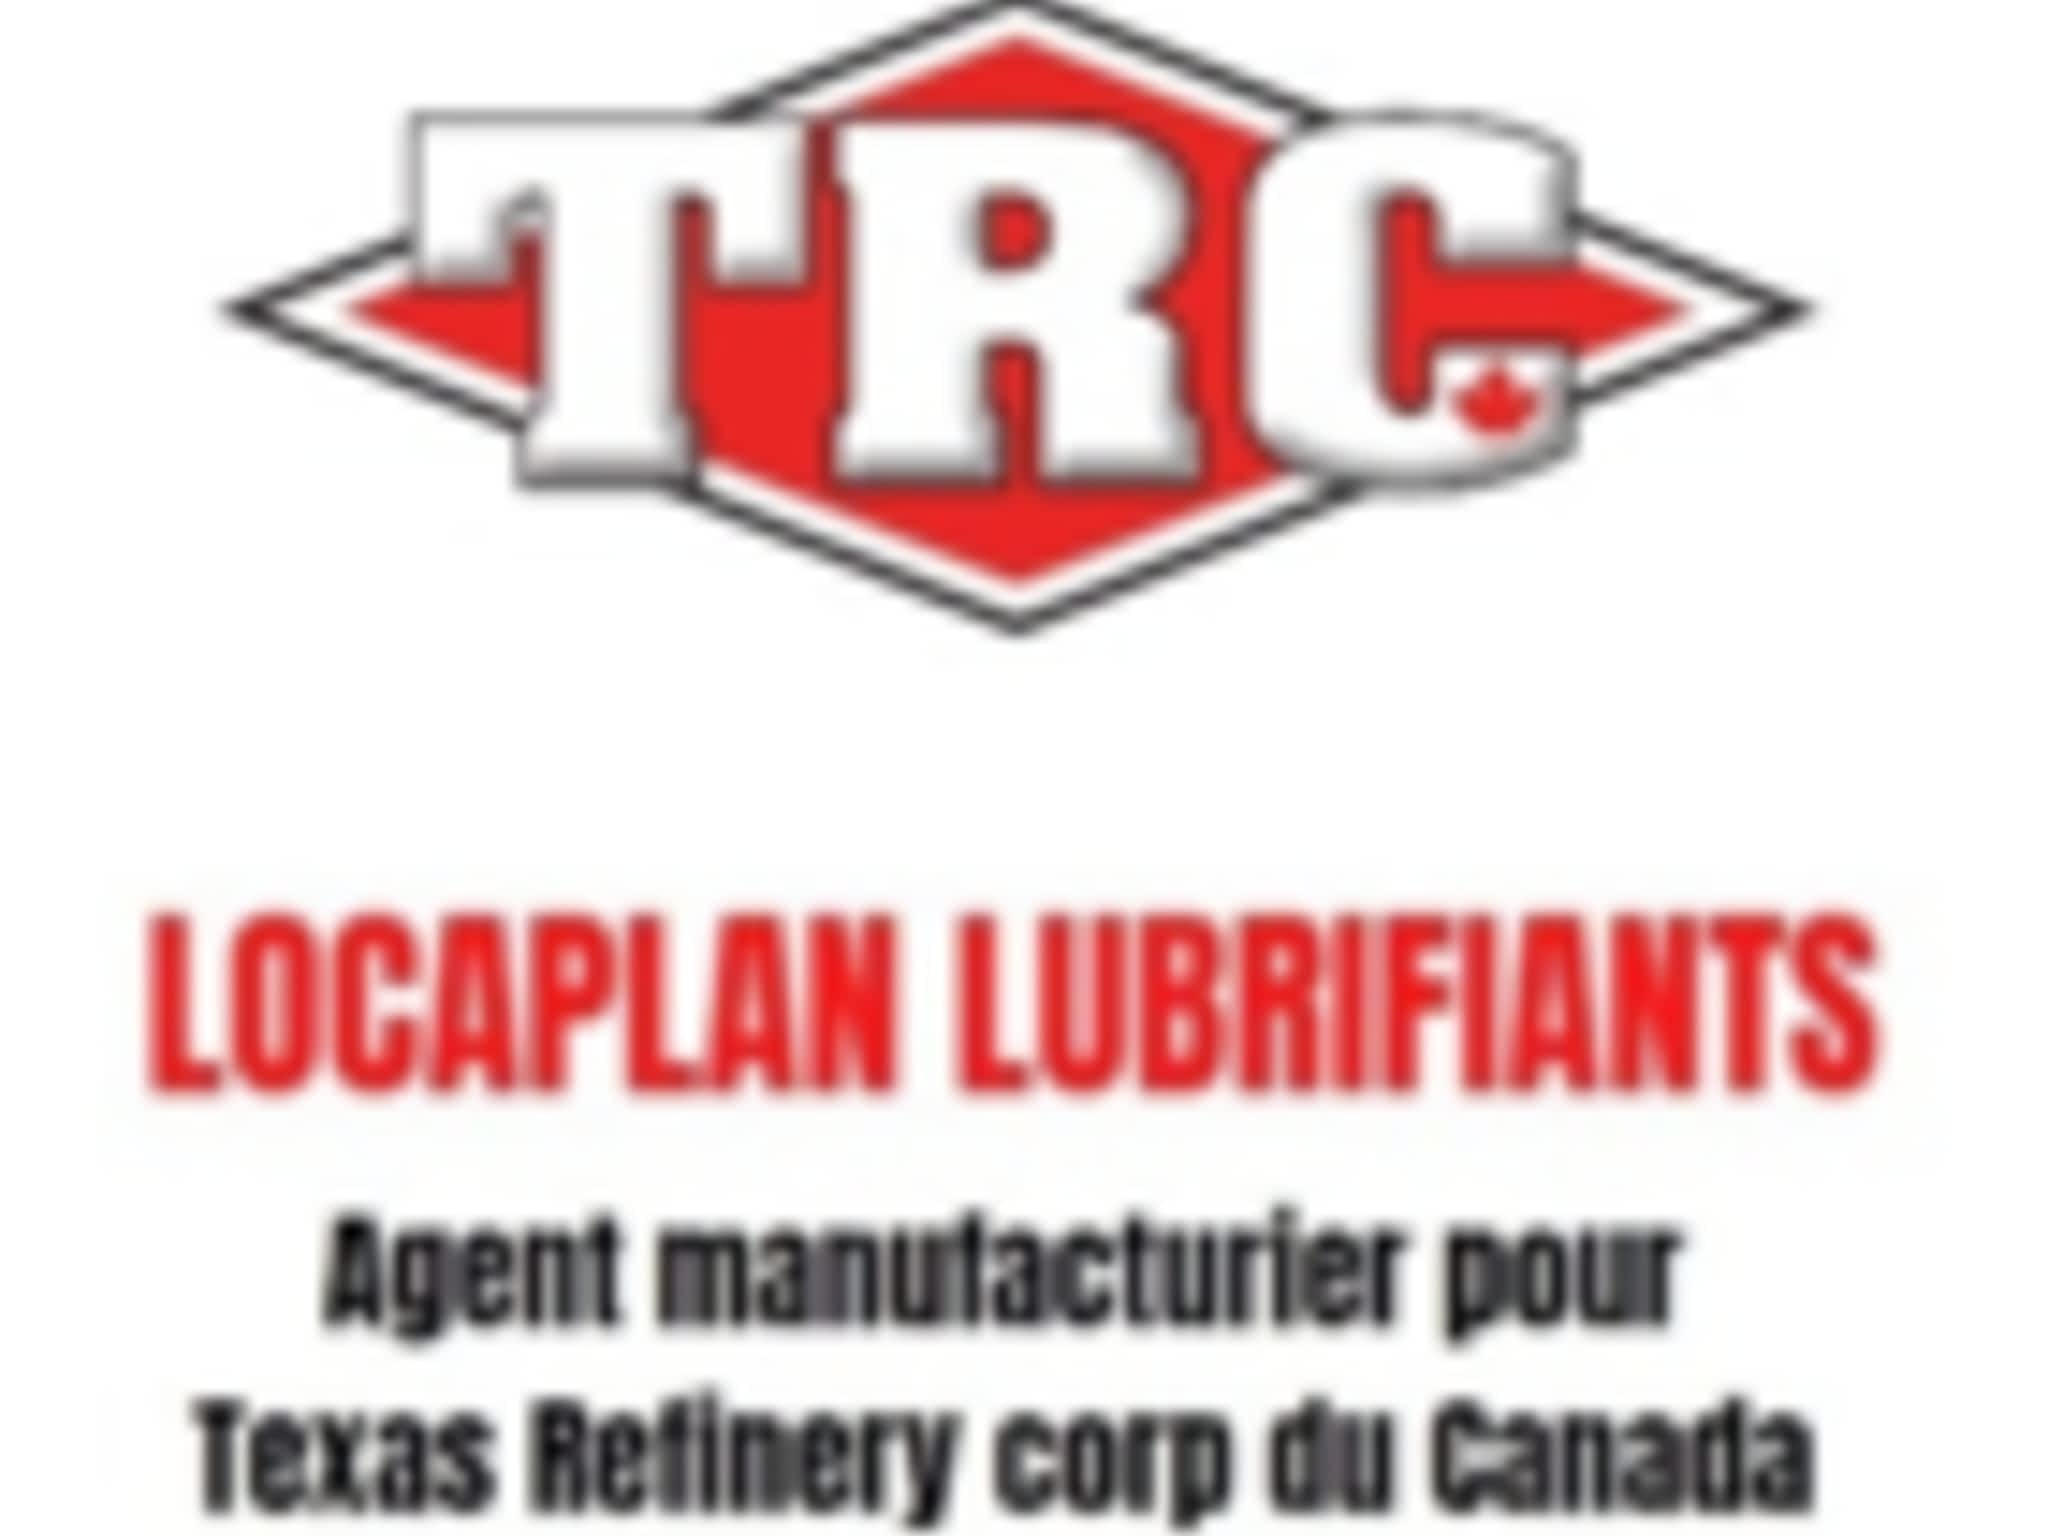 photo Locaplan Lubrifiants Agent Manufacturier Pour Texas Refinery Corp